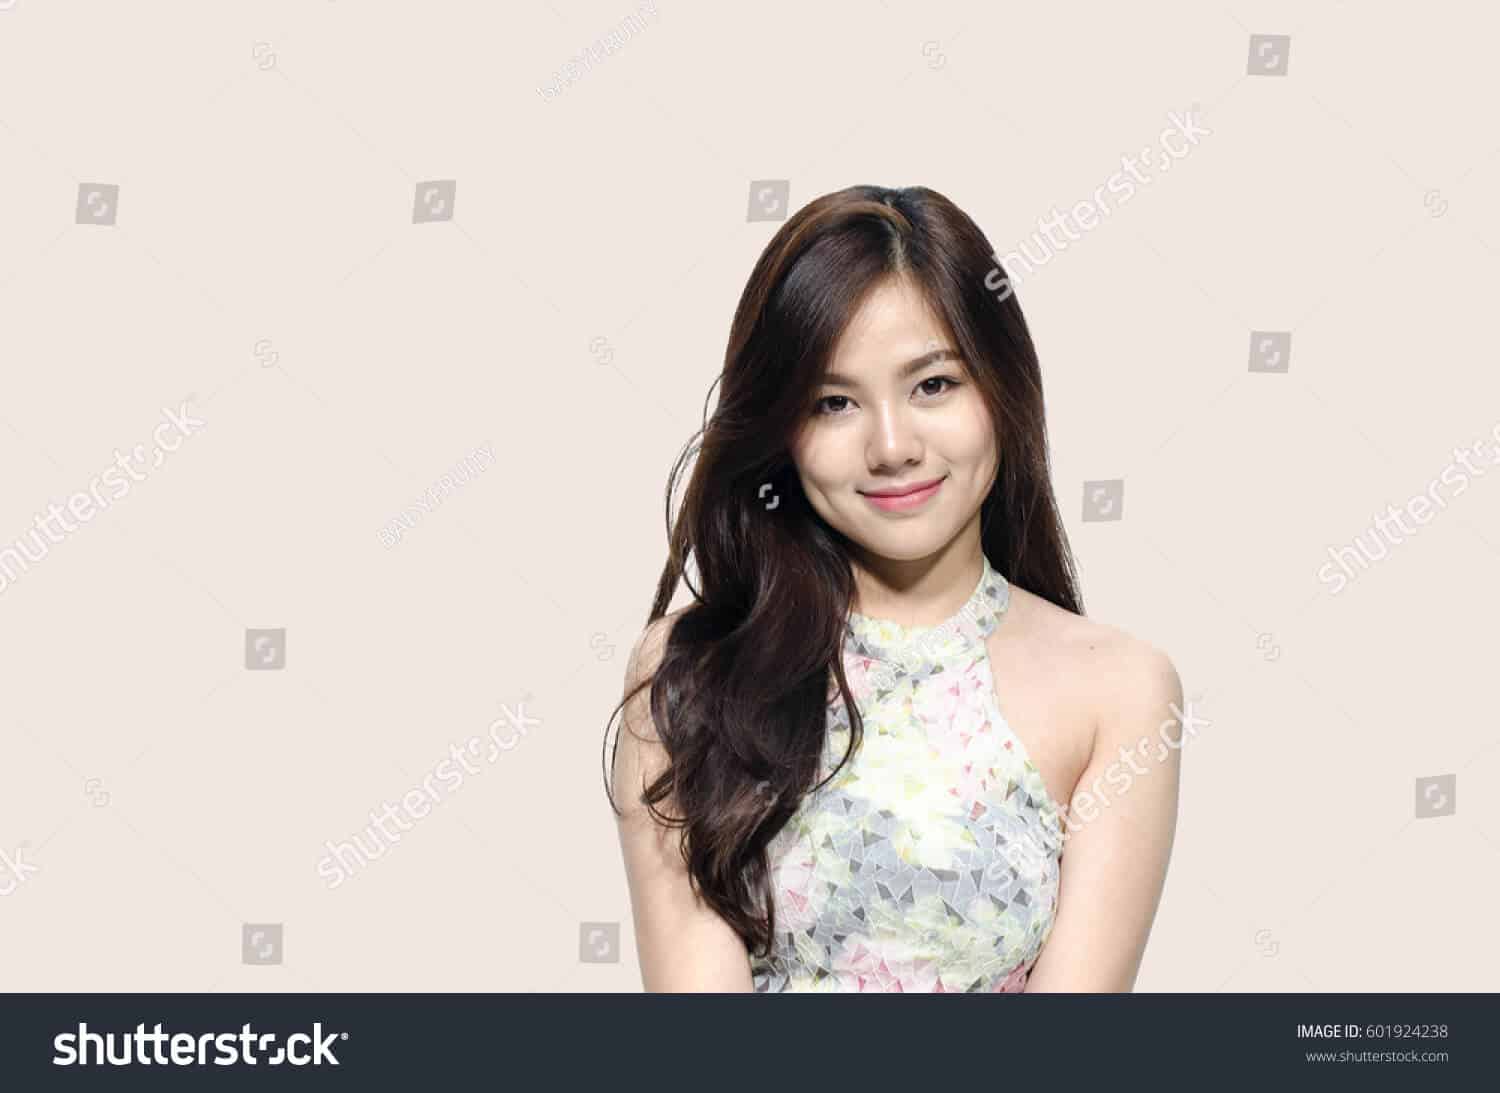 1 triệu 800 ngàn hình ảnh người đẹp Châu Á chất lượng cao trên Shutterstock